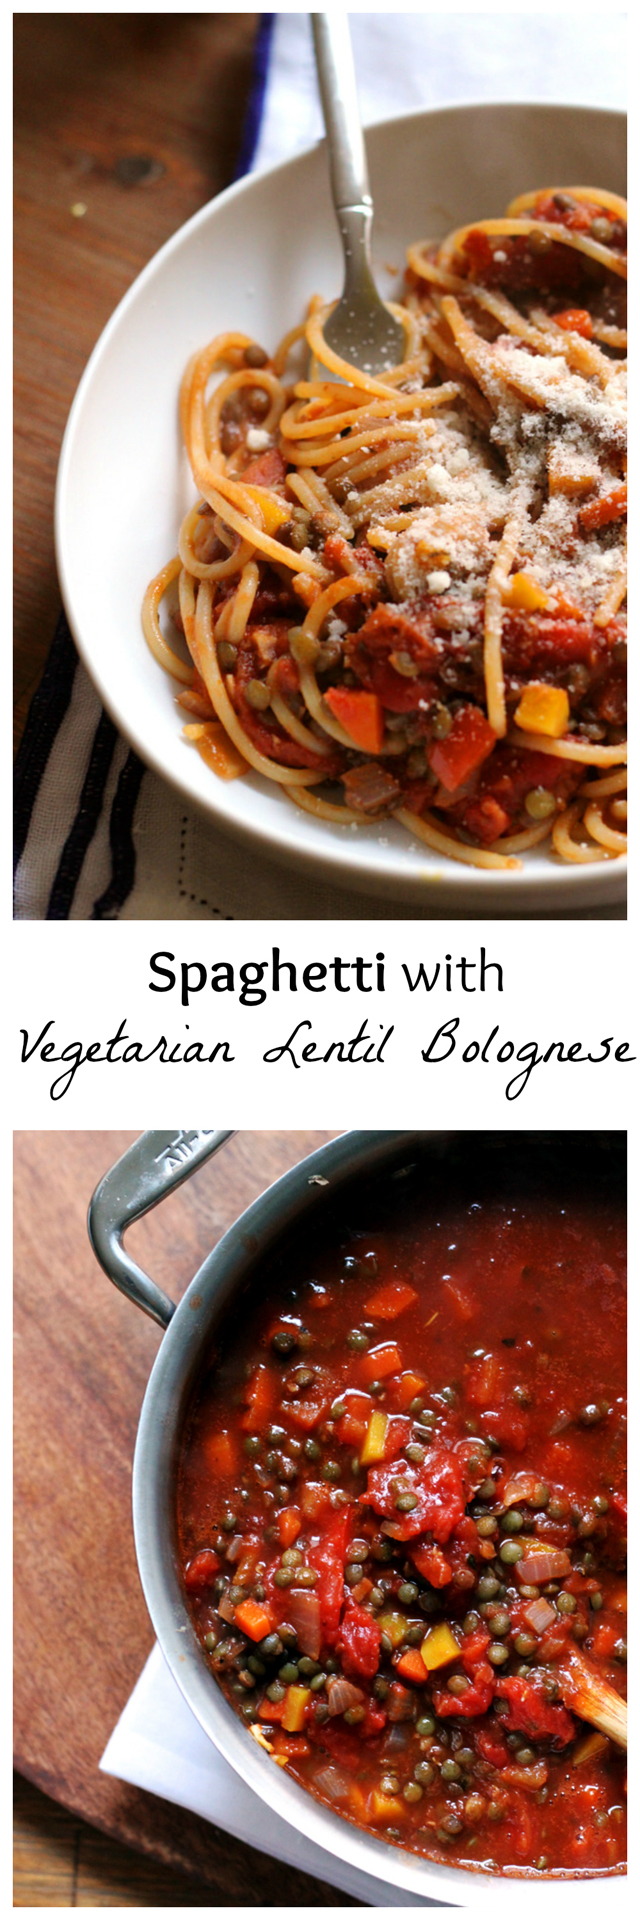 spaghetti with vegetarian lentil bolognese